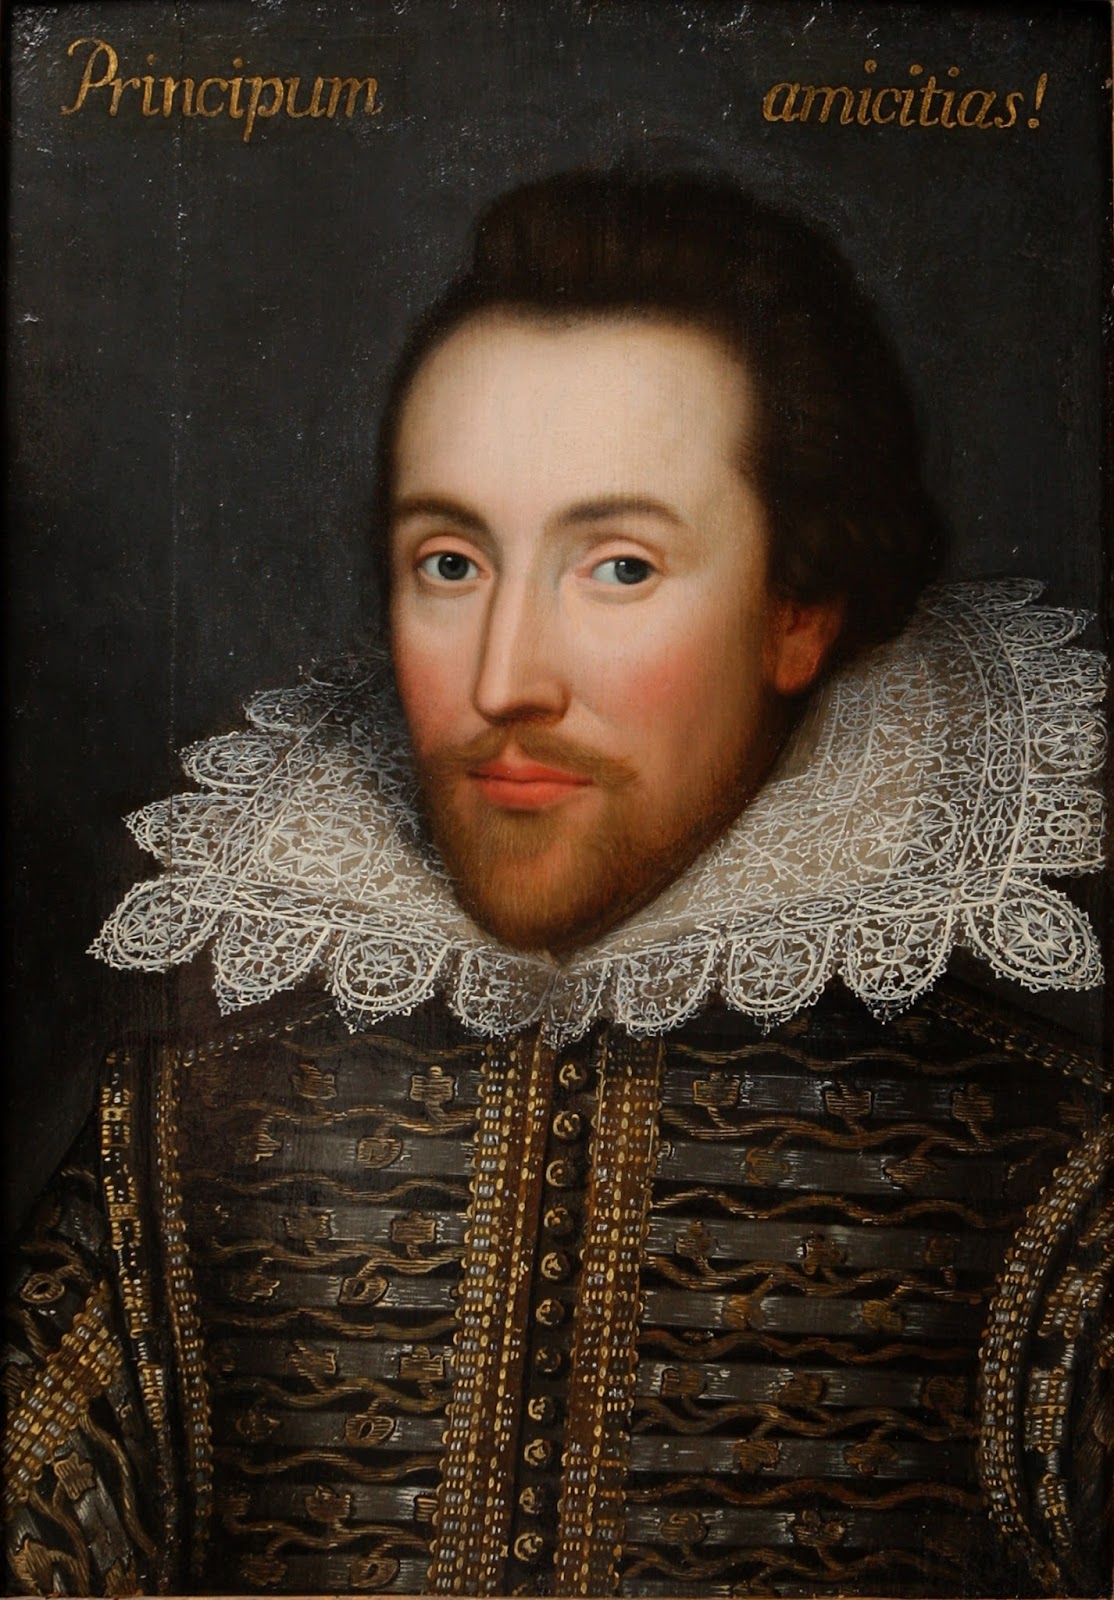 Shakespeare apocrypha - Wikipedia